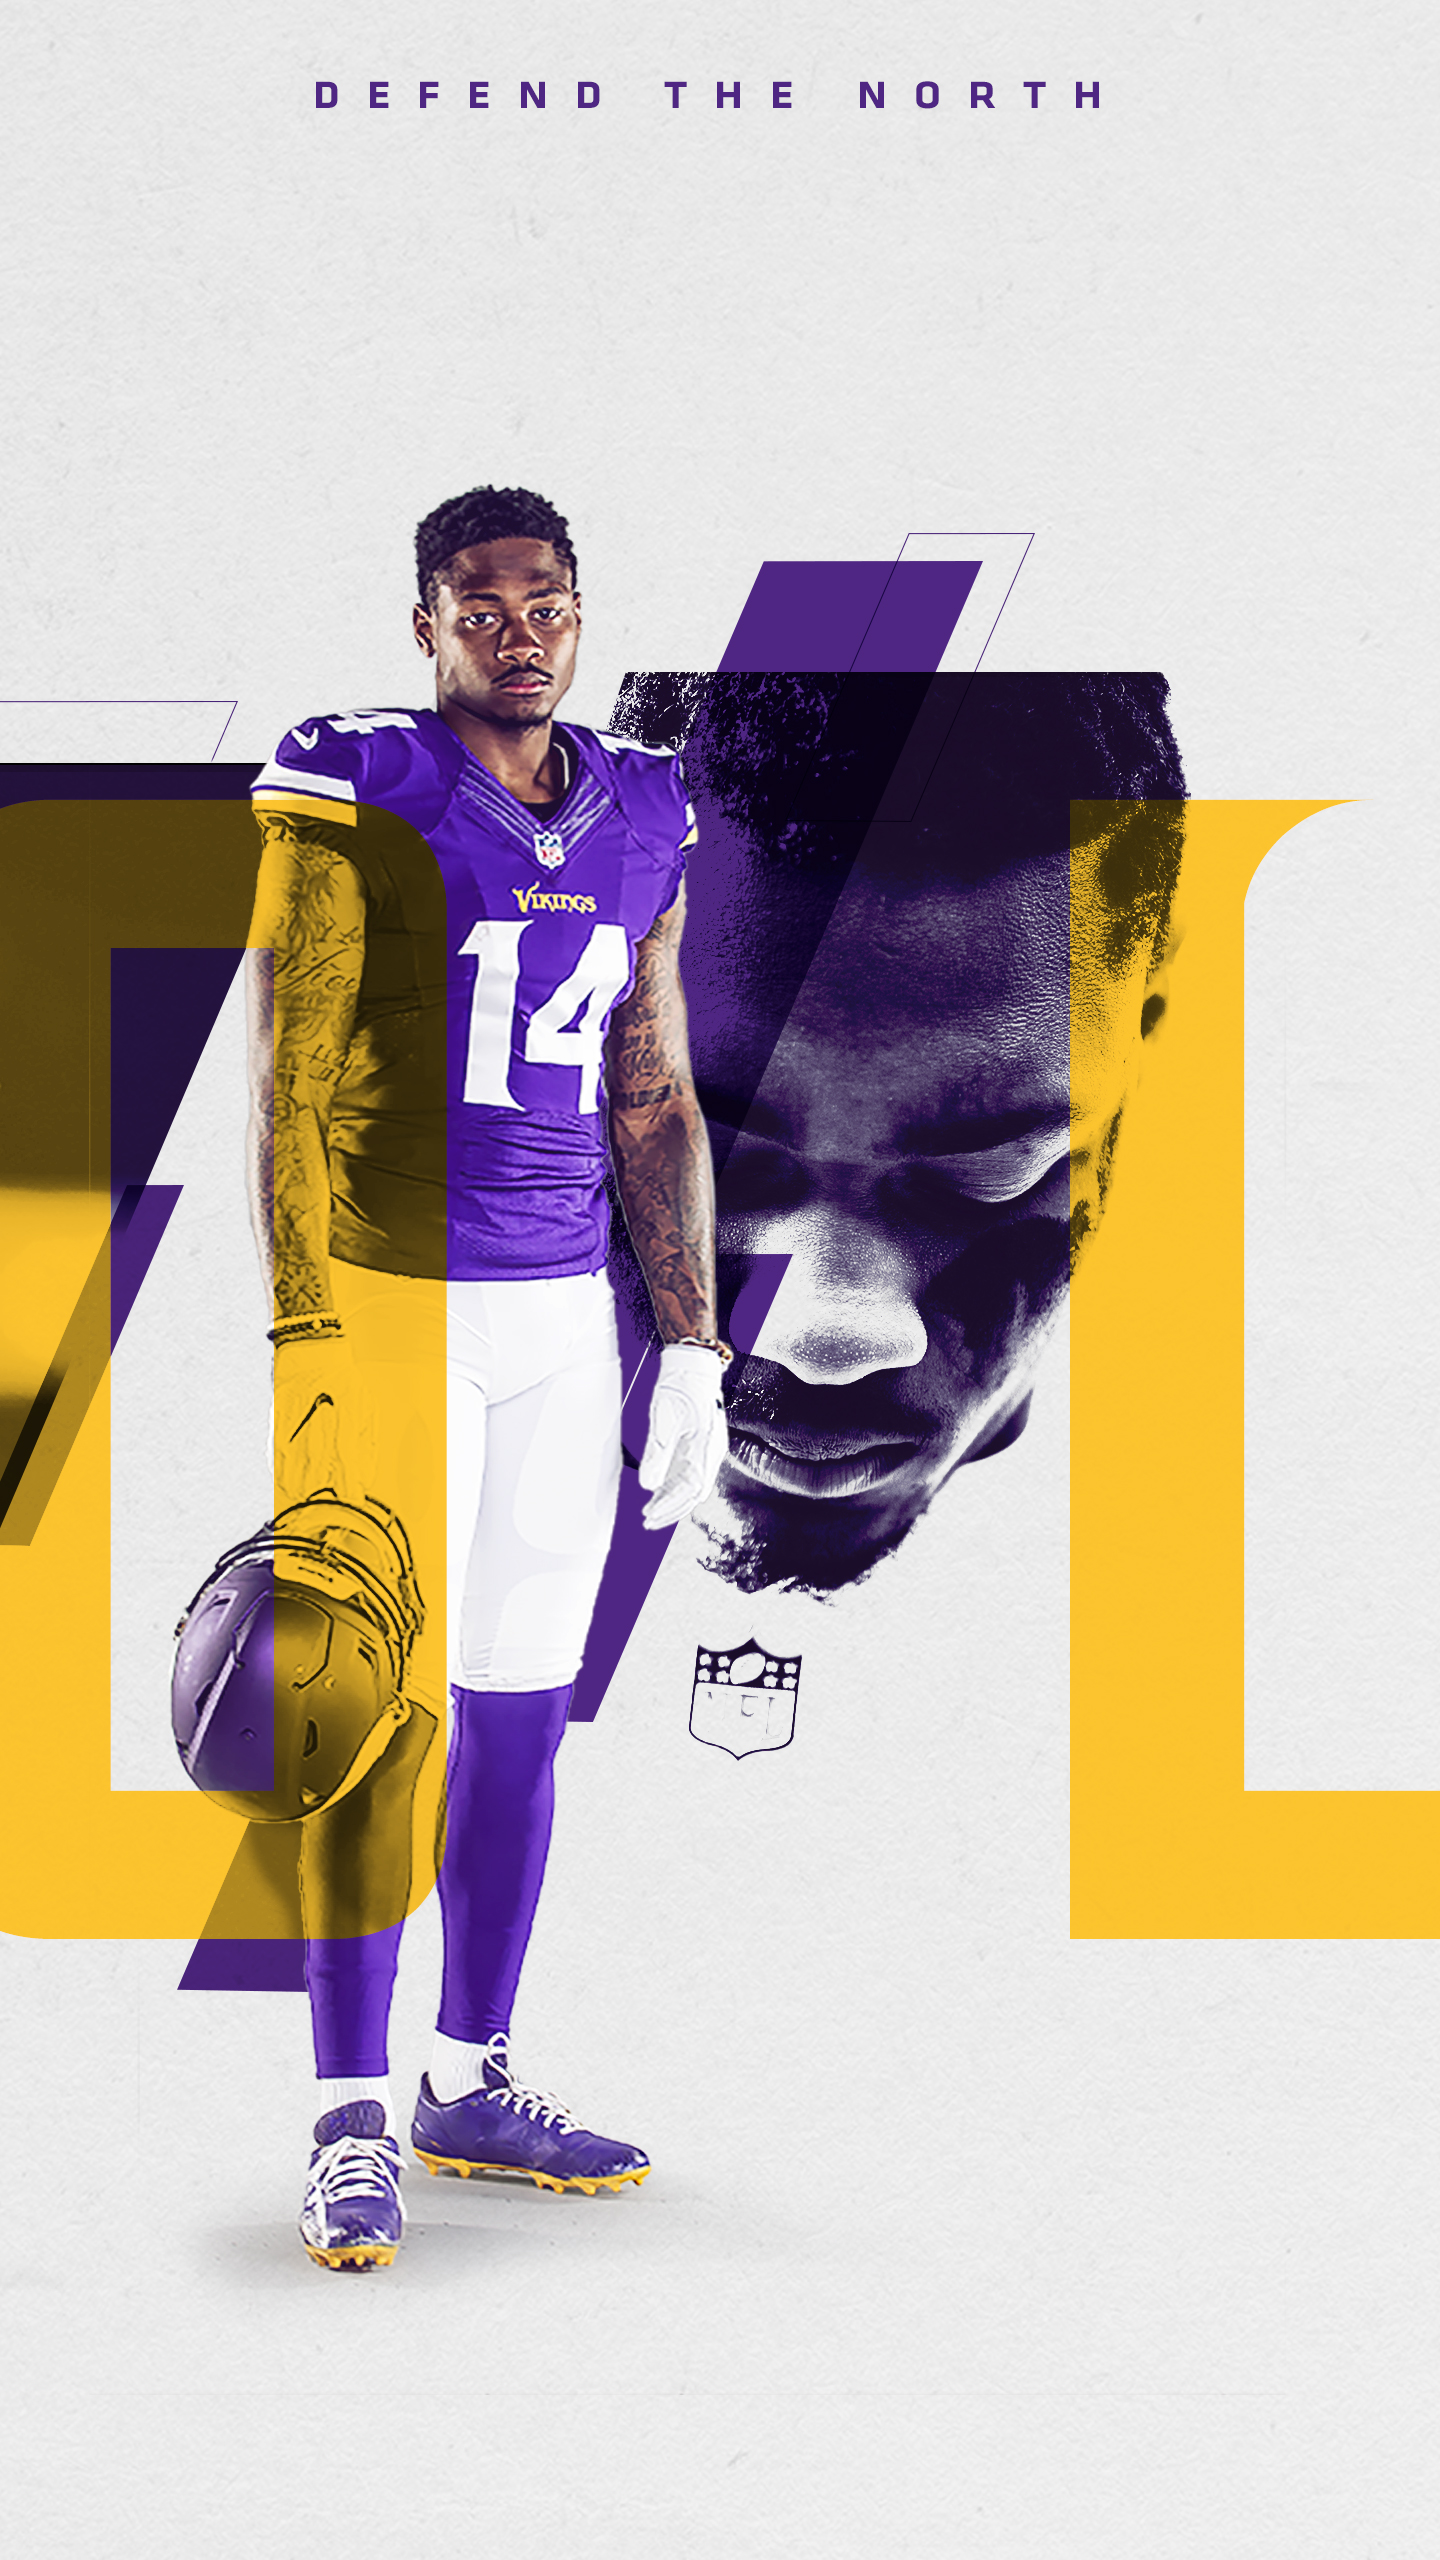 Mobile Wallpaper website of the Minnesota Vikings